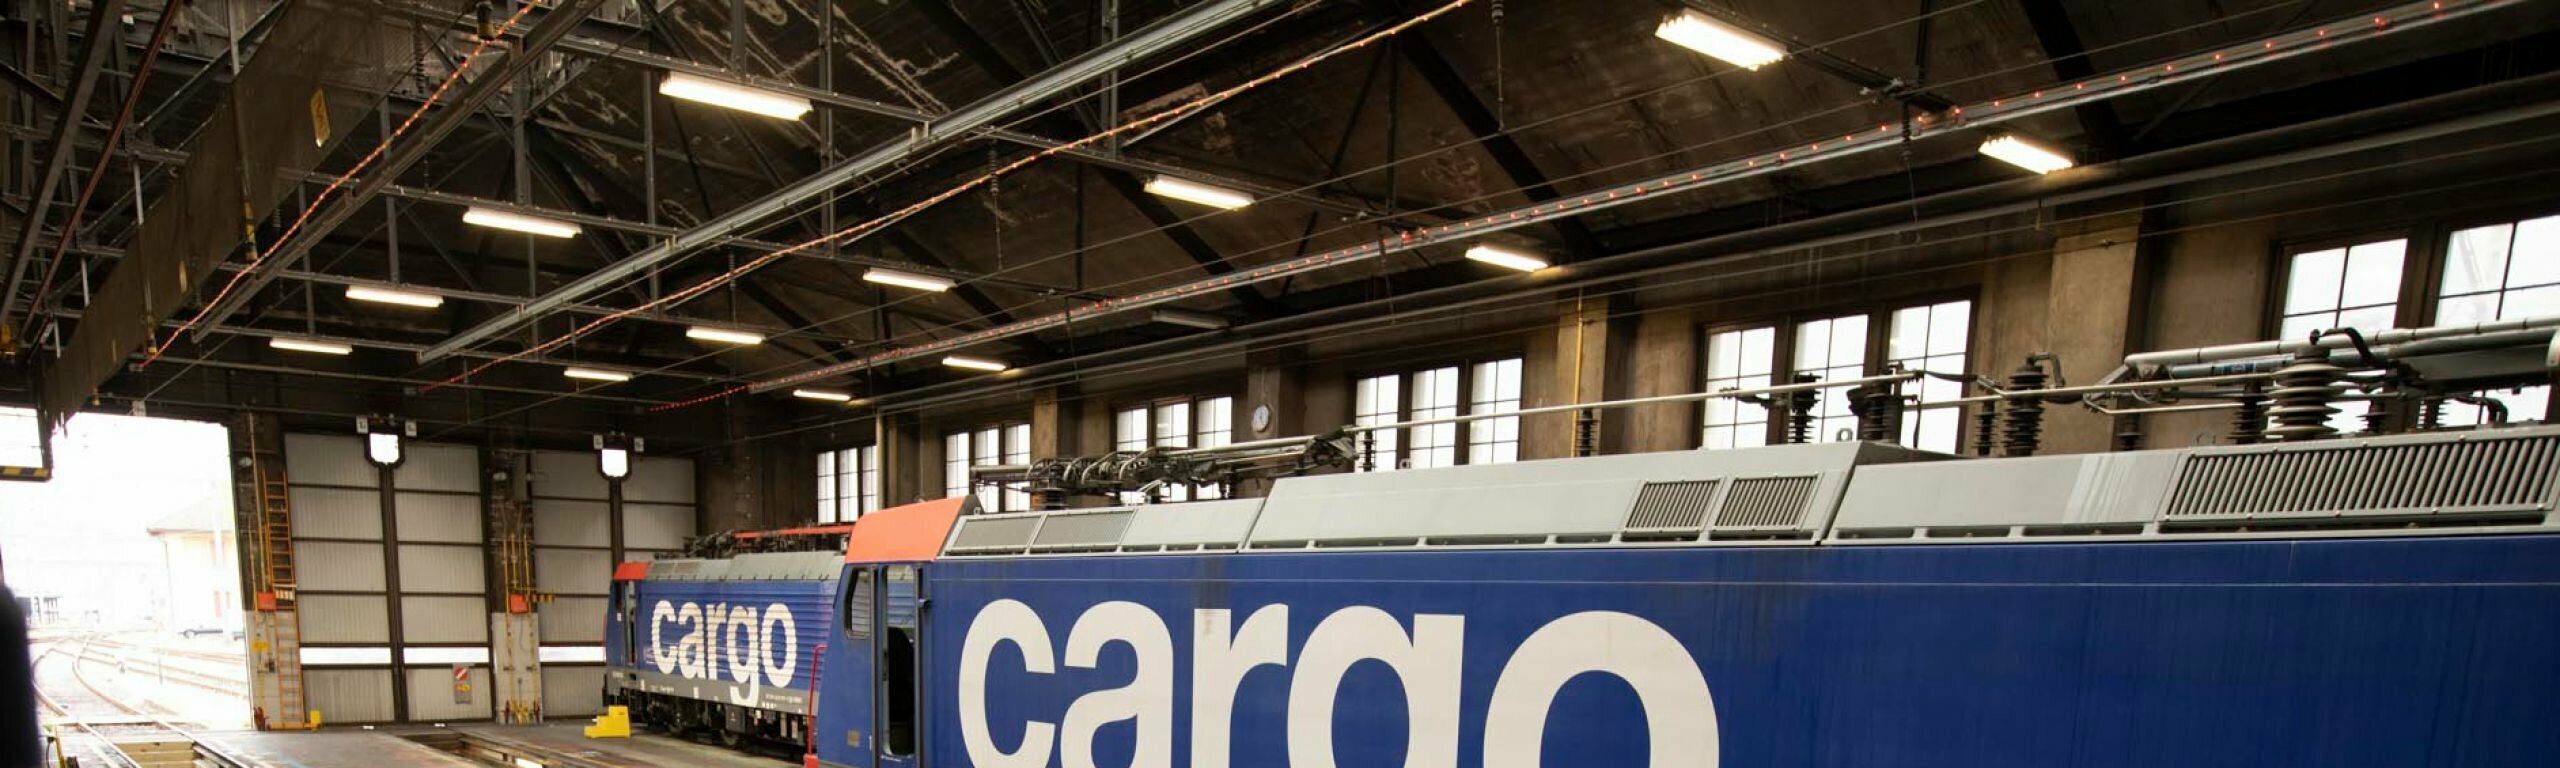 Assainissement et agrandissement des ateliers Cargo de Chiasso